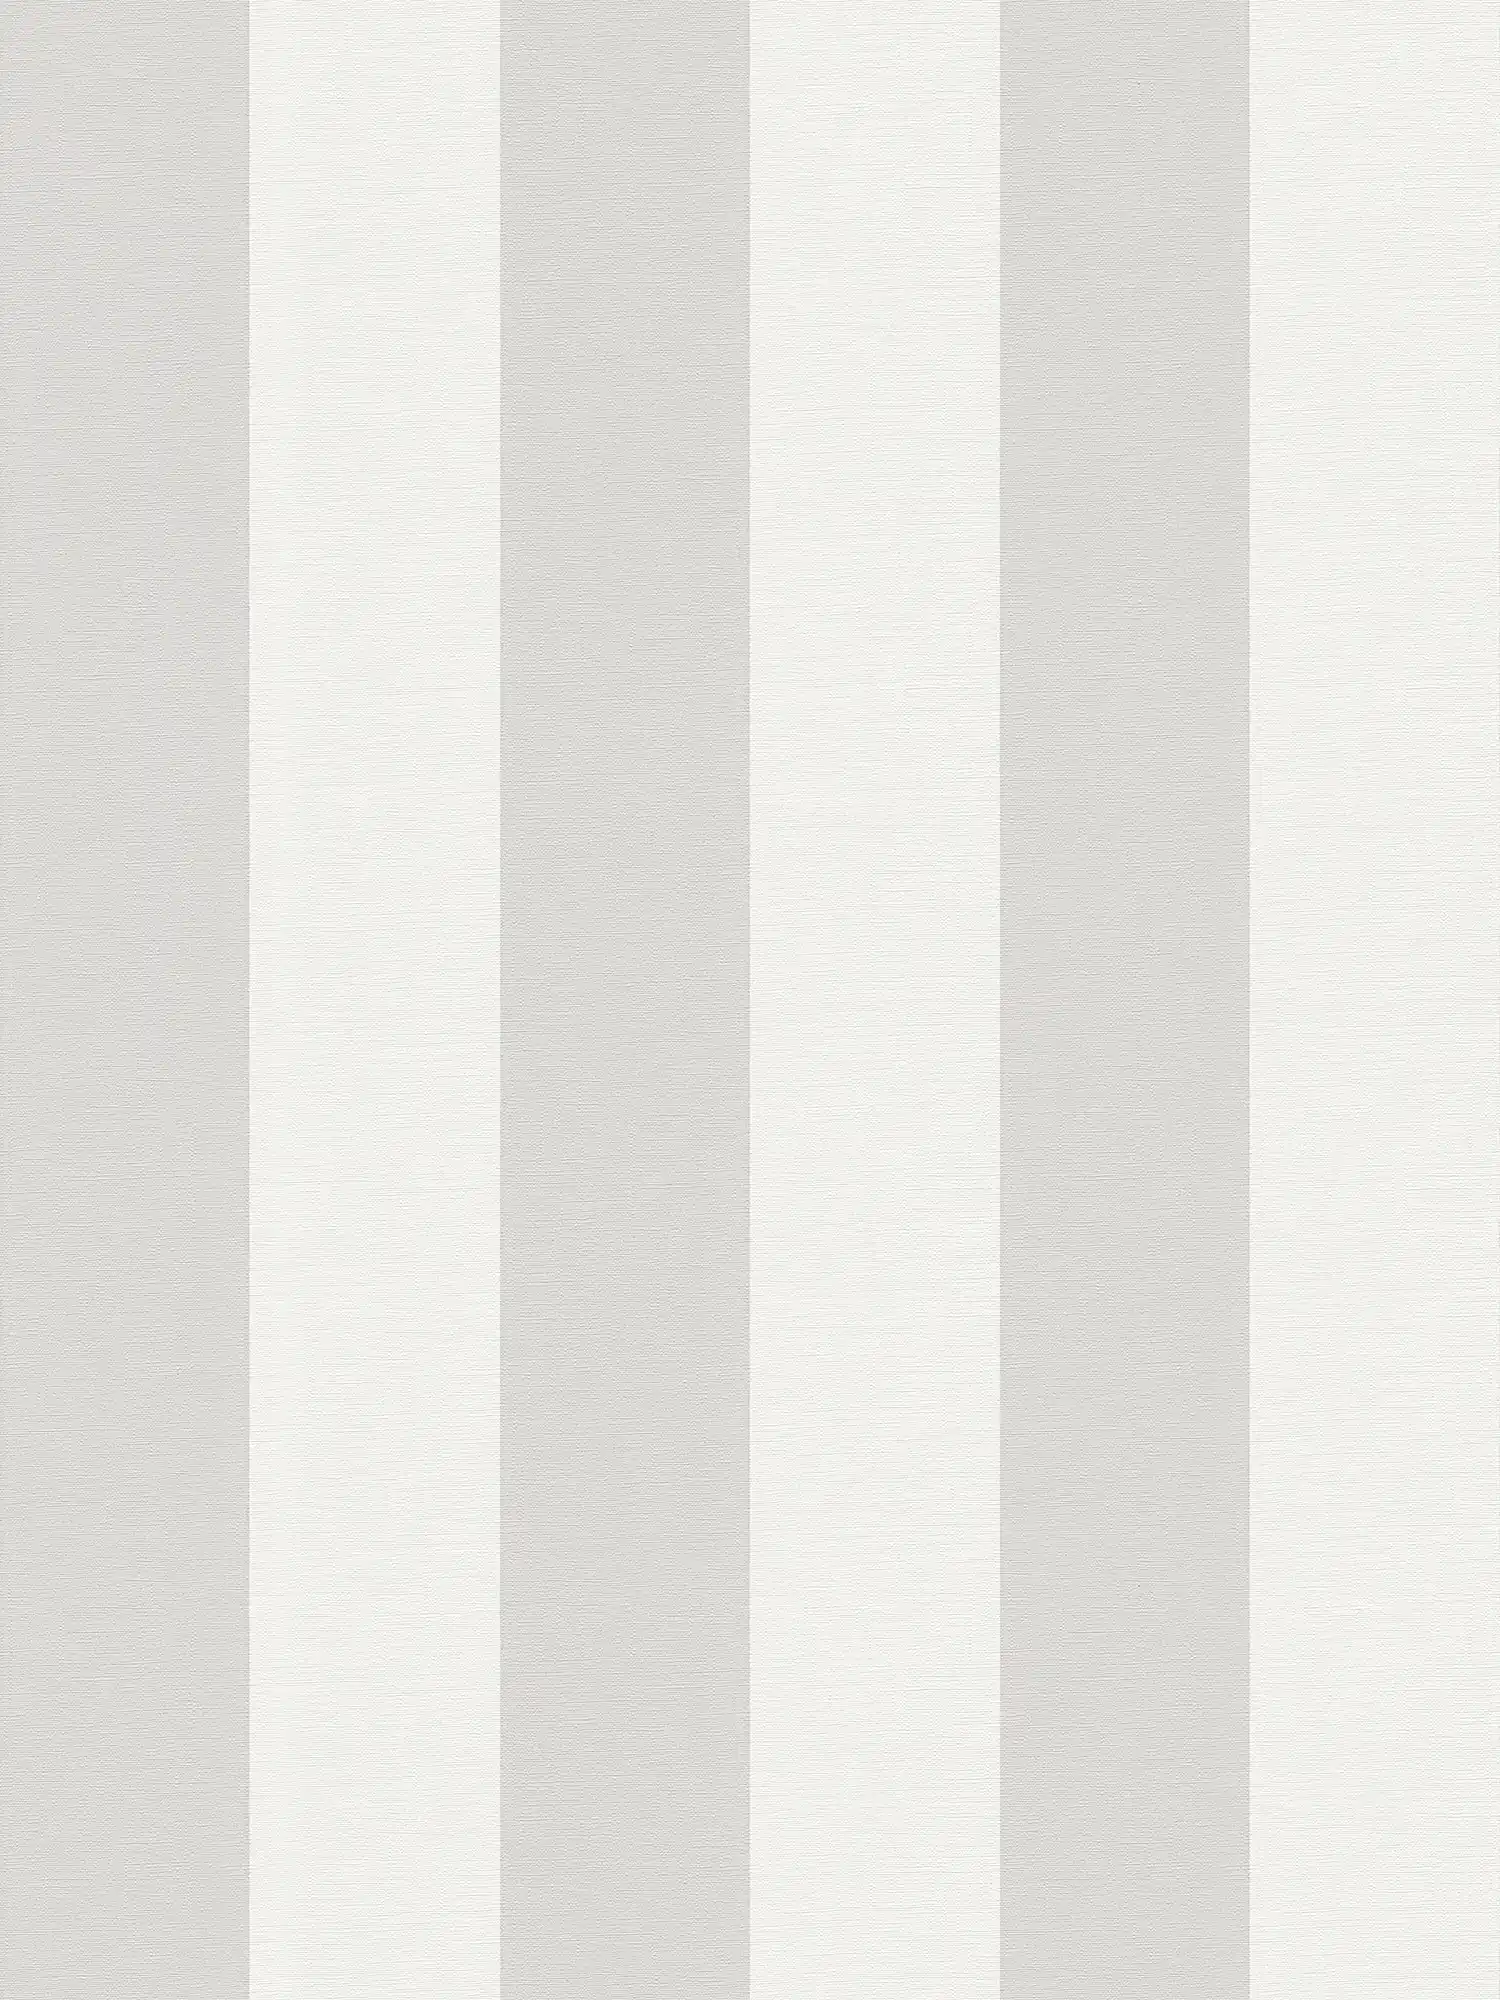 Blokstreepbehang met textiellook voor jong design - grijs, wit
